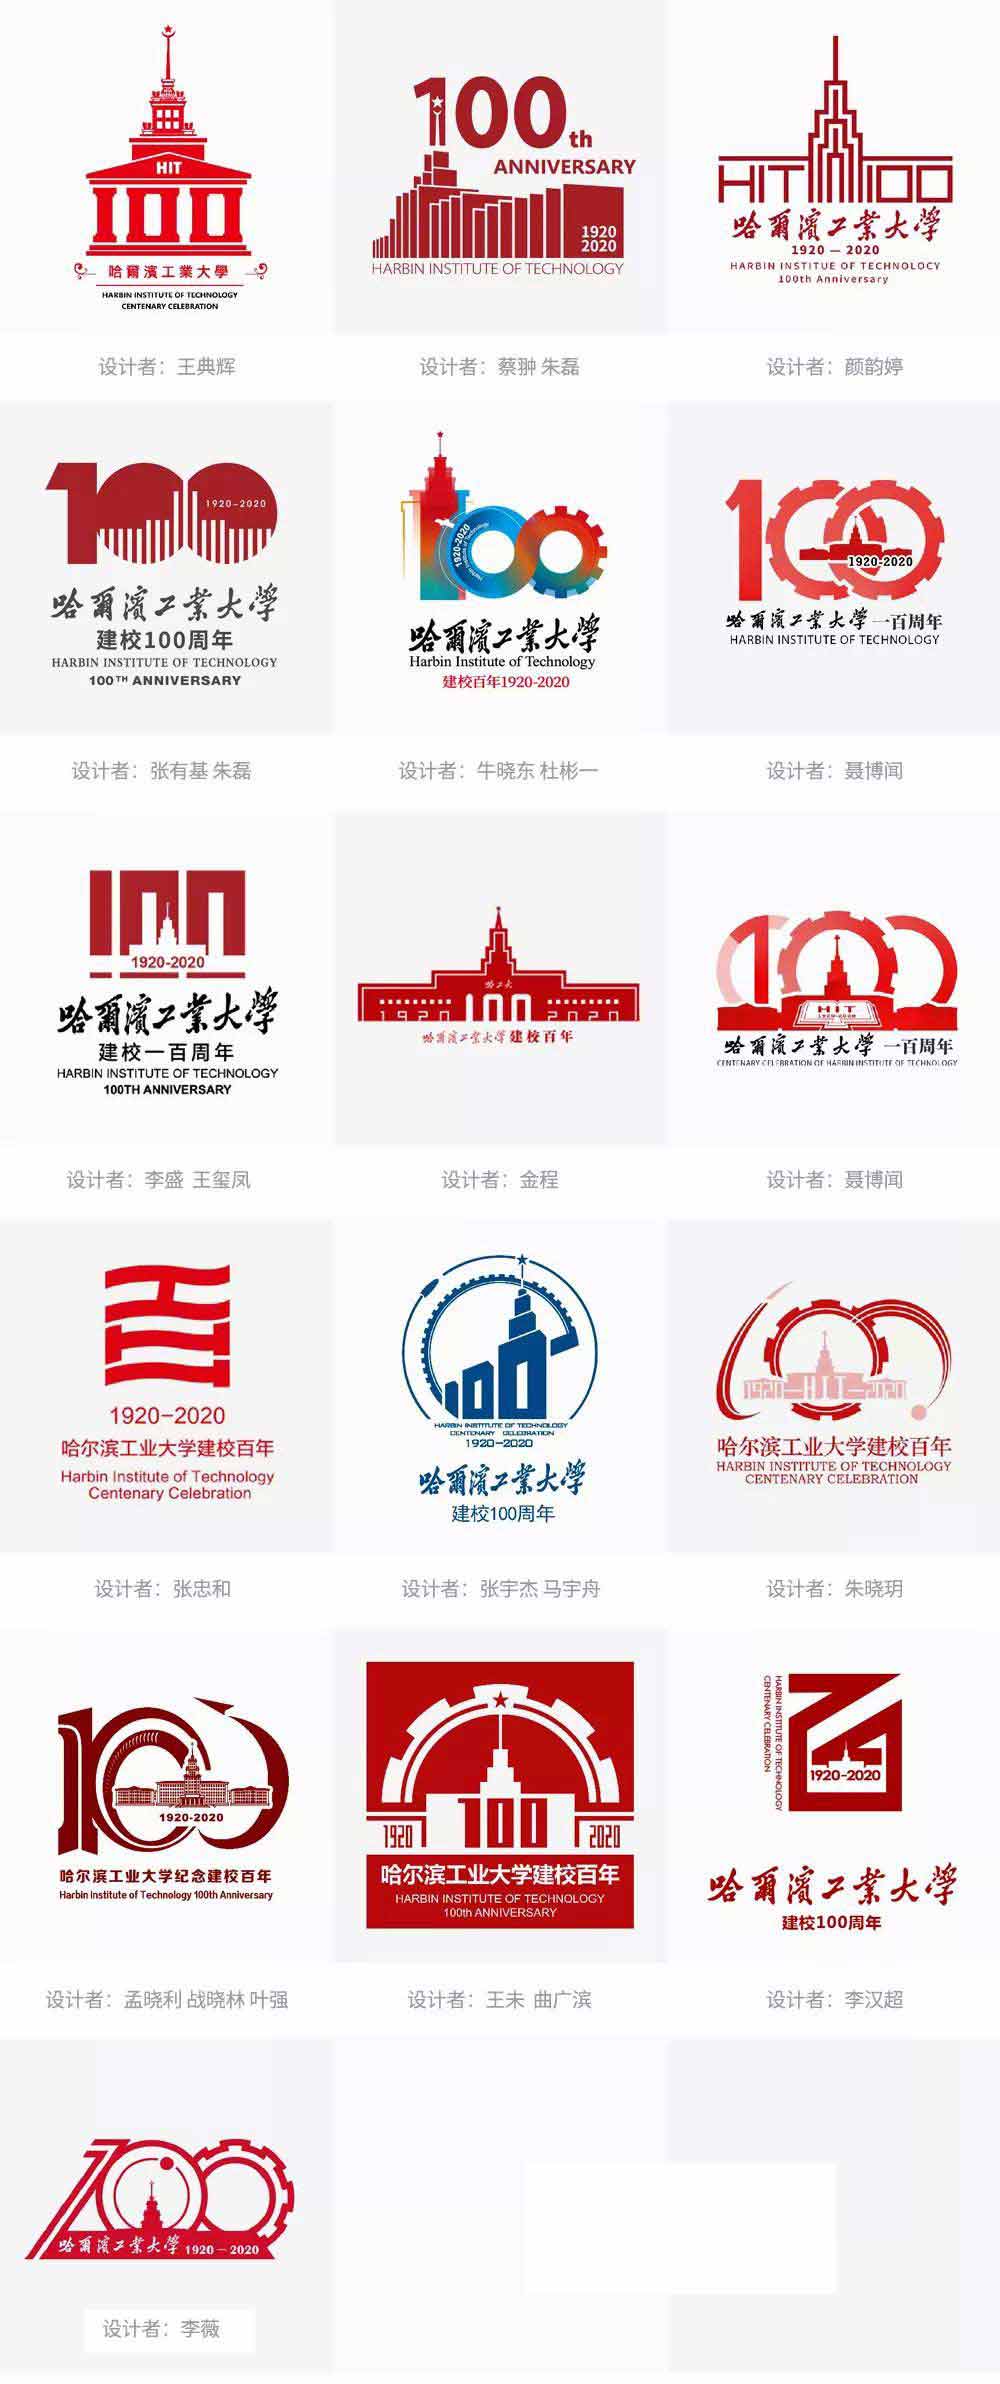 哈尔滨工业大学发布纪念建校100周年logo